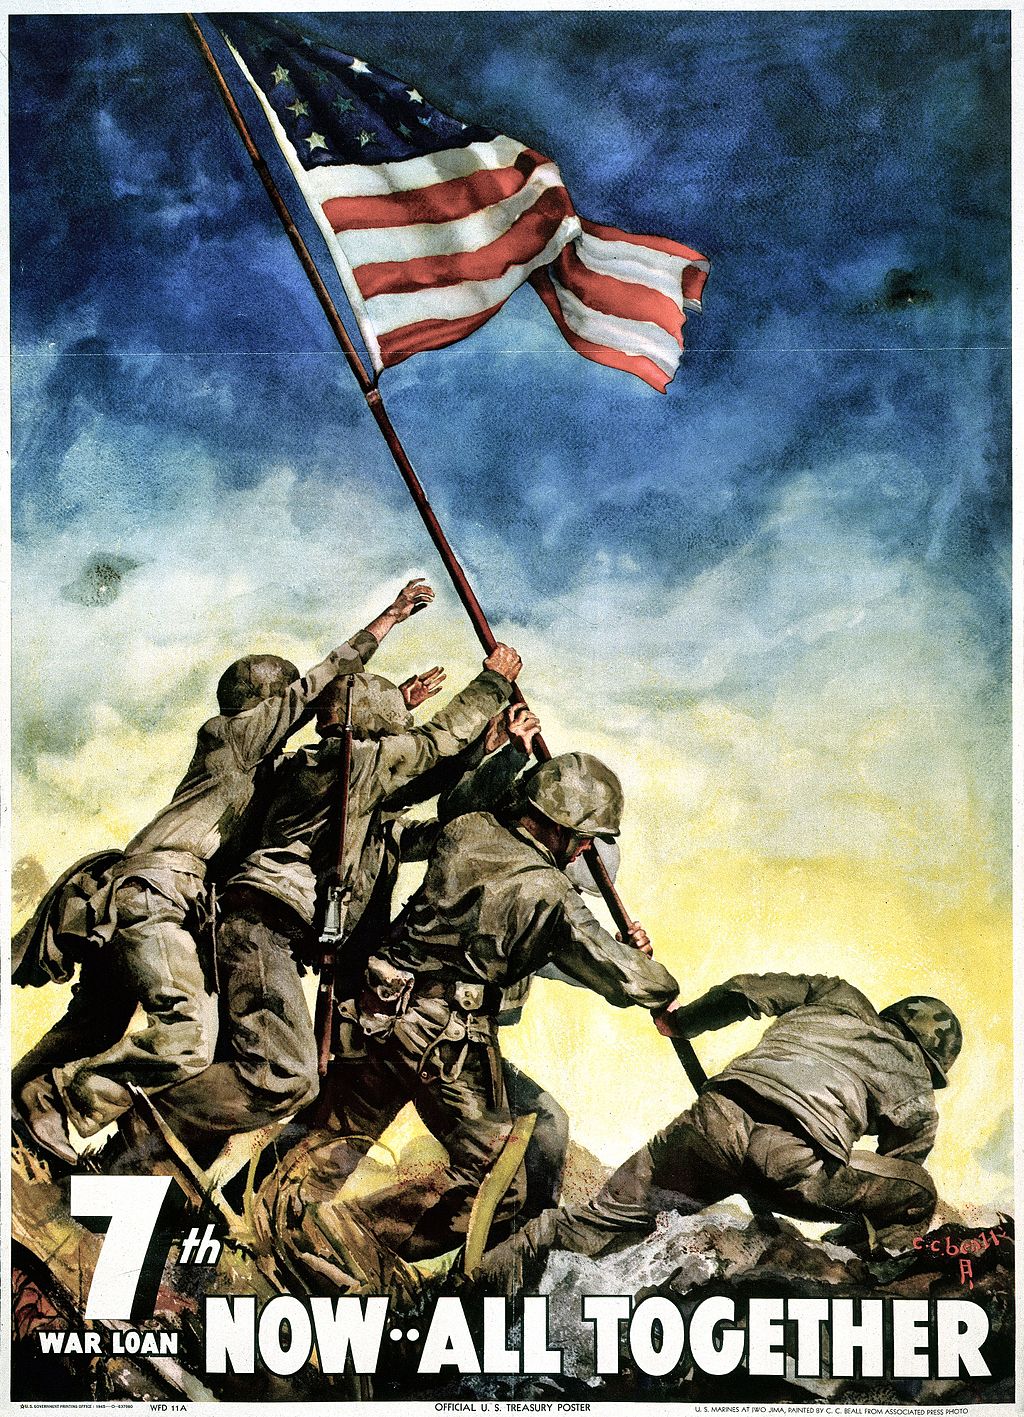 התמונה שמכרה לאמריקנים את המלחמה. פוסטר לעידוד רכישת אגרות חוב במלחמת העולם השנייה (ויקימדיה)